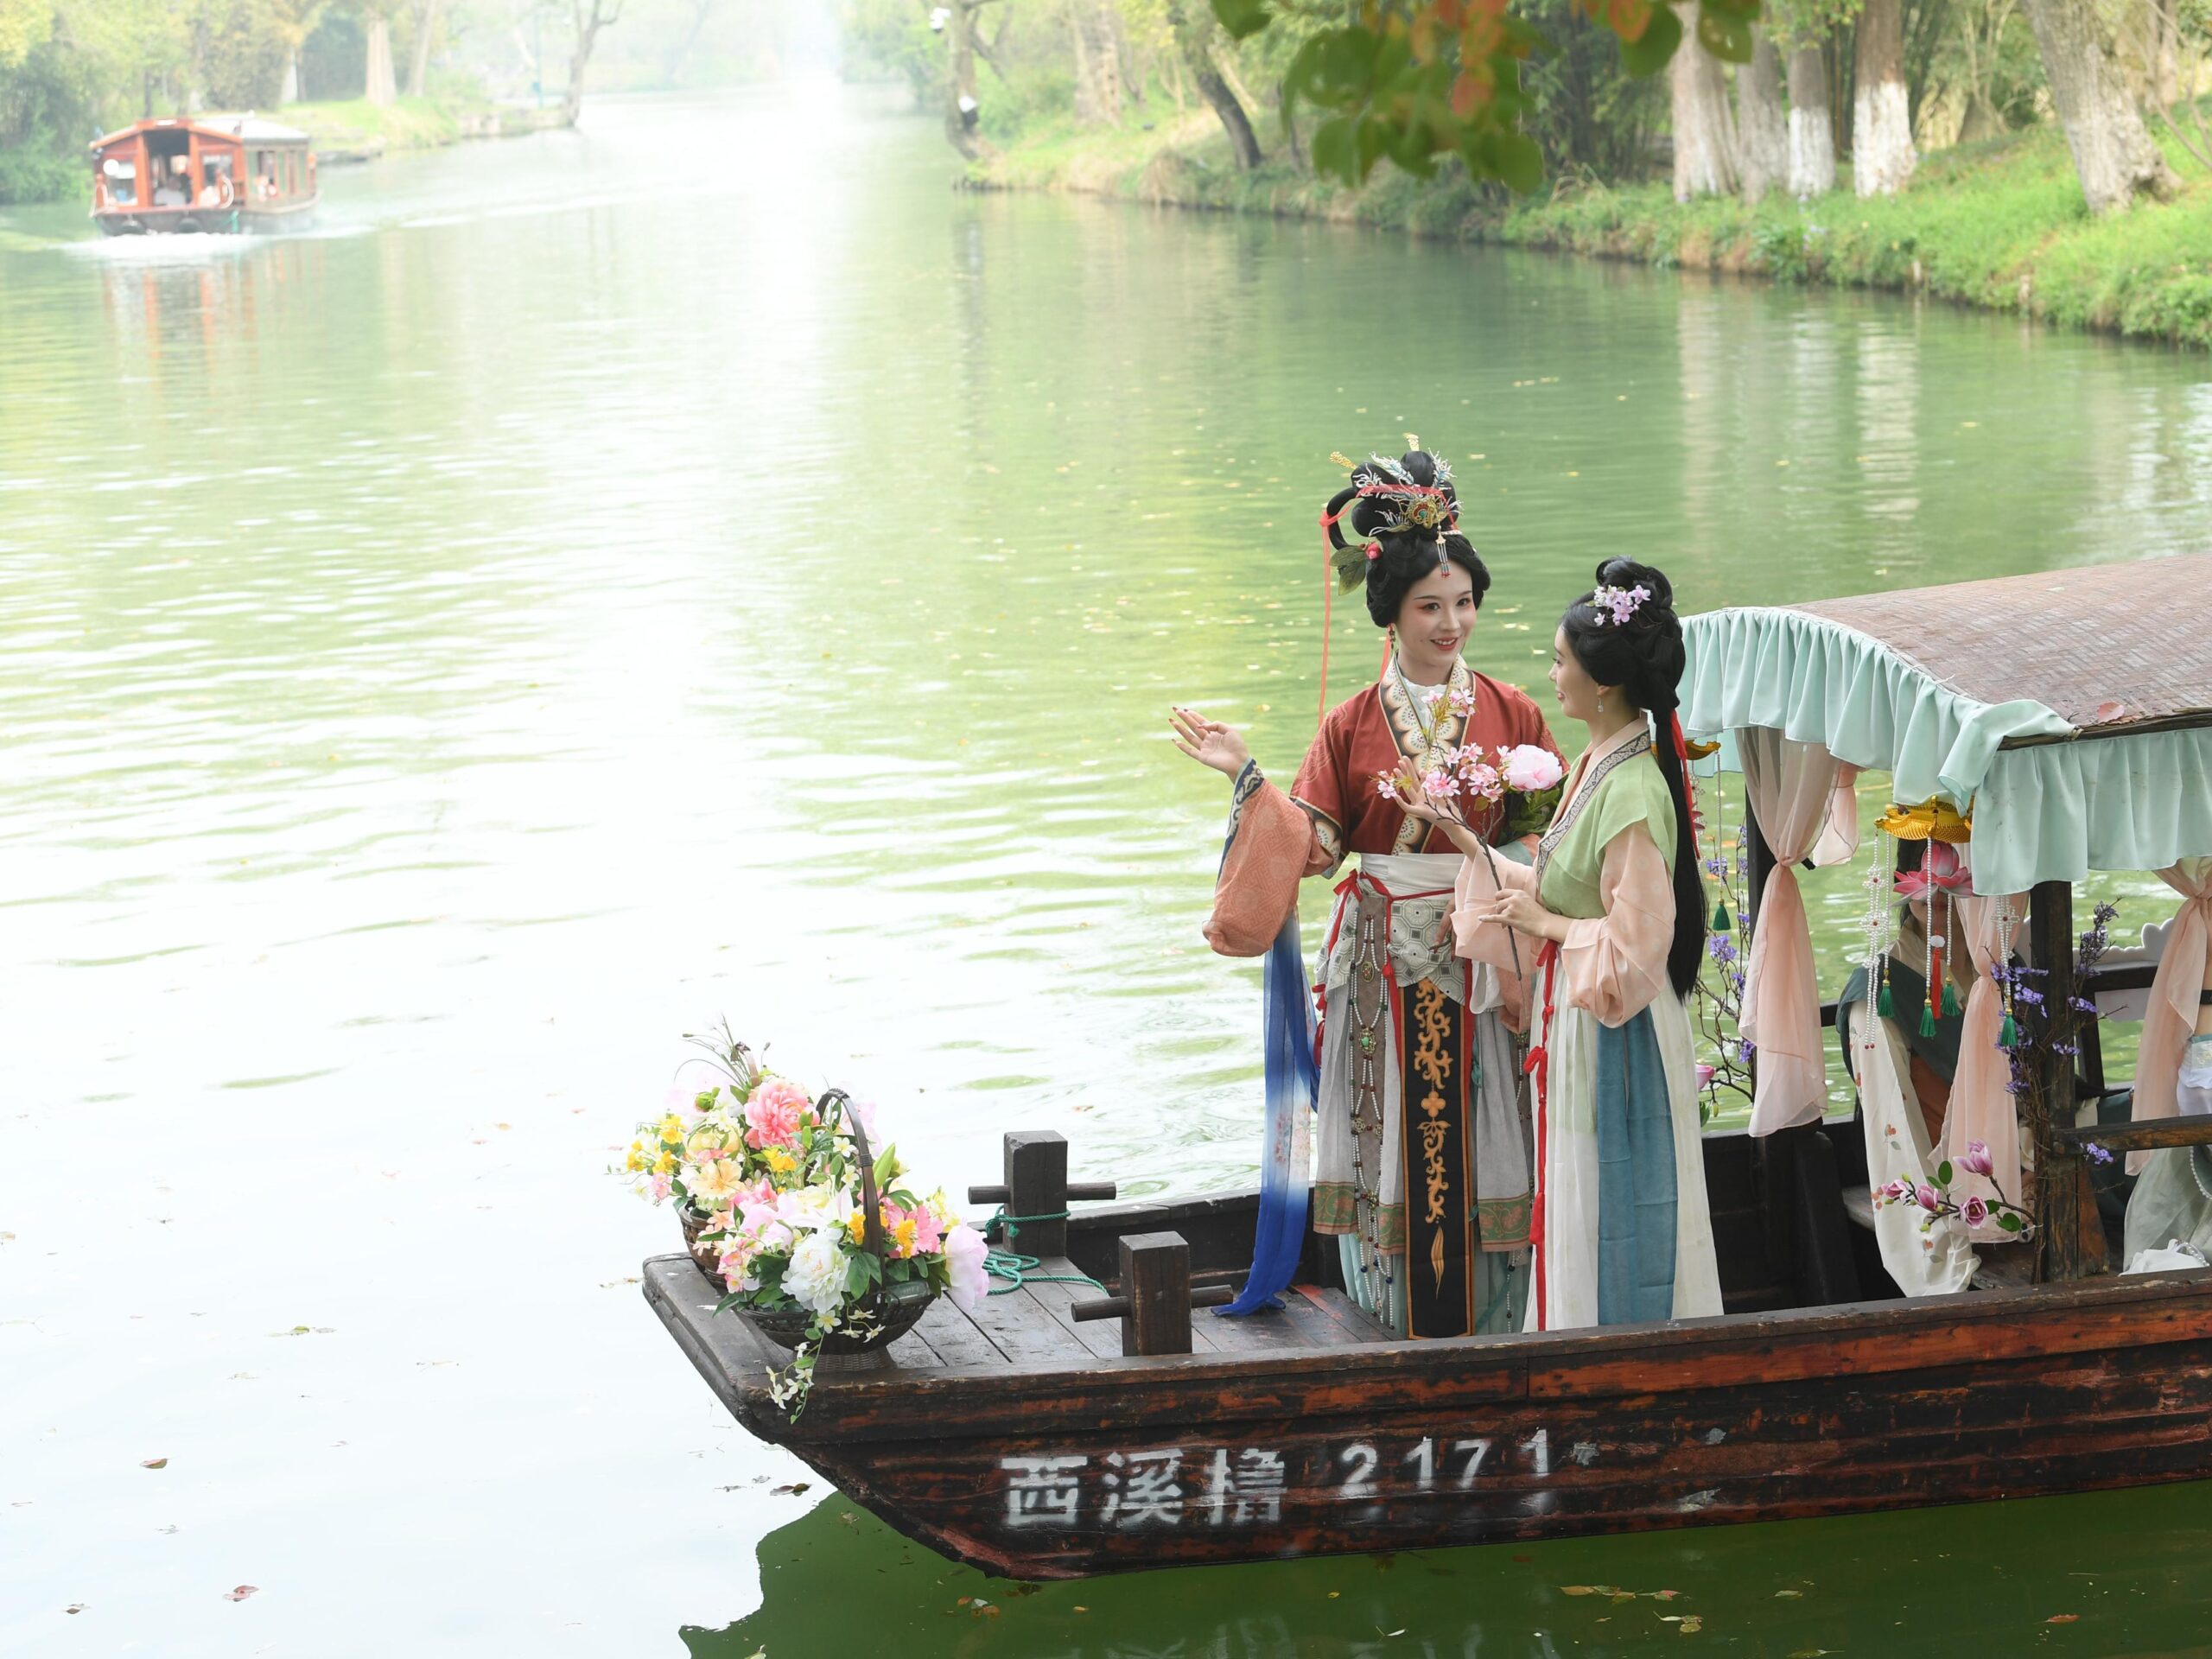 เรือแห่สาวงามในชุดจีนโบราณ ฉลองเทศกาลดอกไม้ในหางโจว